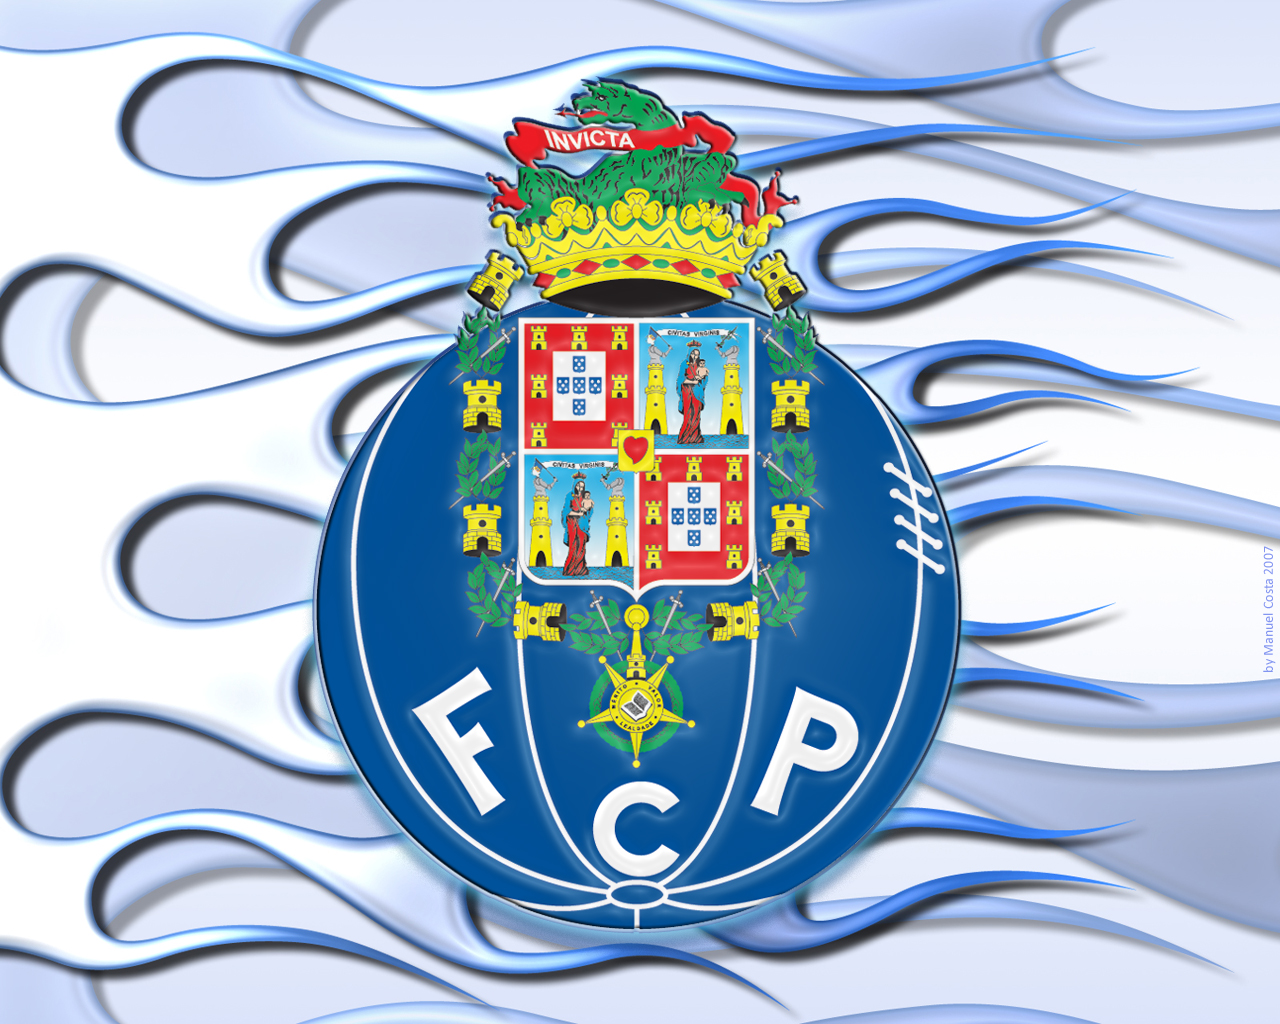 Basquetebol: FC Porto vence nos Açores e cola-se ao Sporting